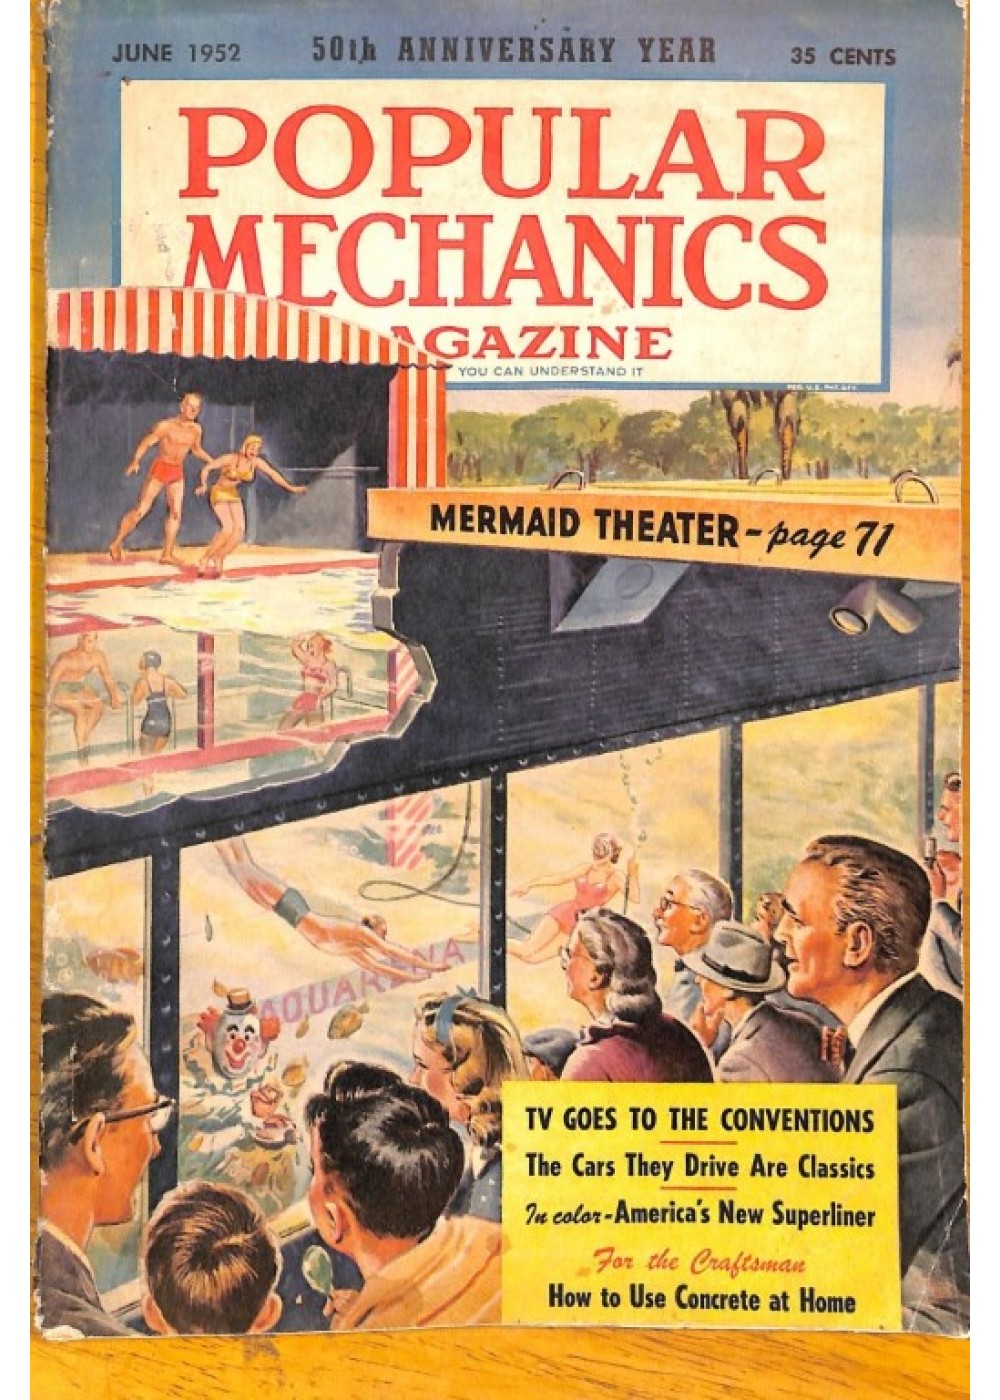 Glurpo on the cover of Popular Mechanics – June, 1952